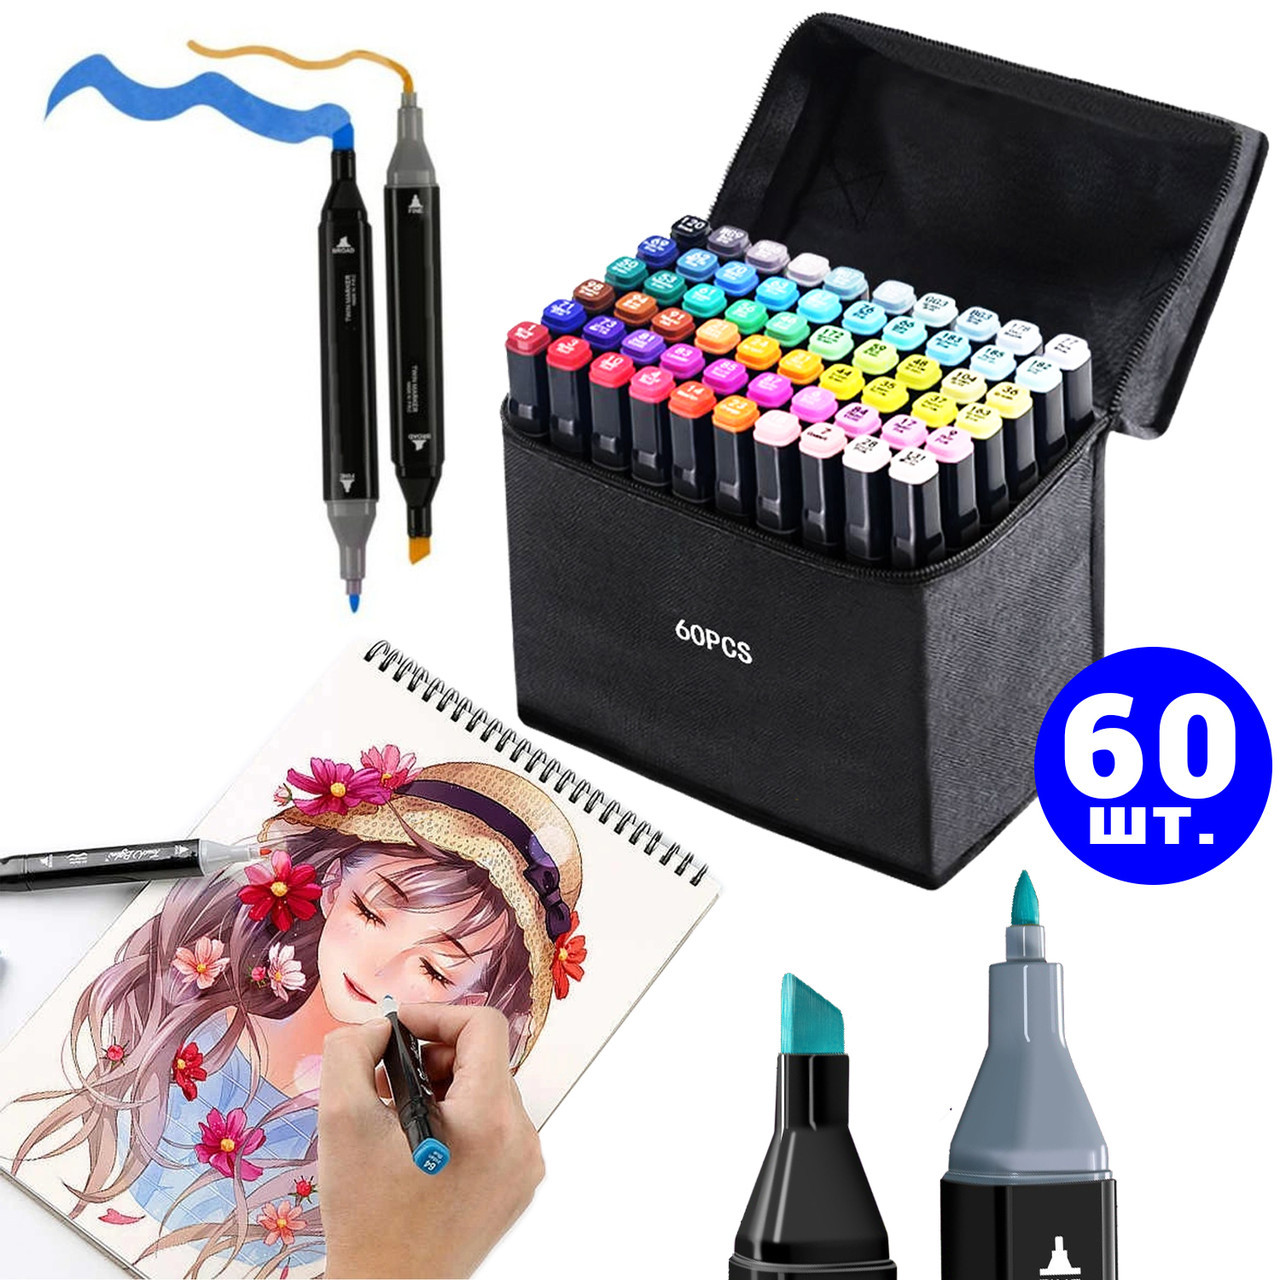 Якісний Набір скетч маркерів 60 кольорів | Двосторонні маркери для малювання і скетчинга в сумці AN